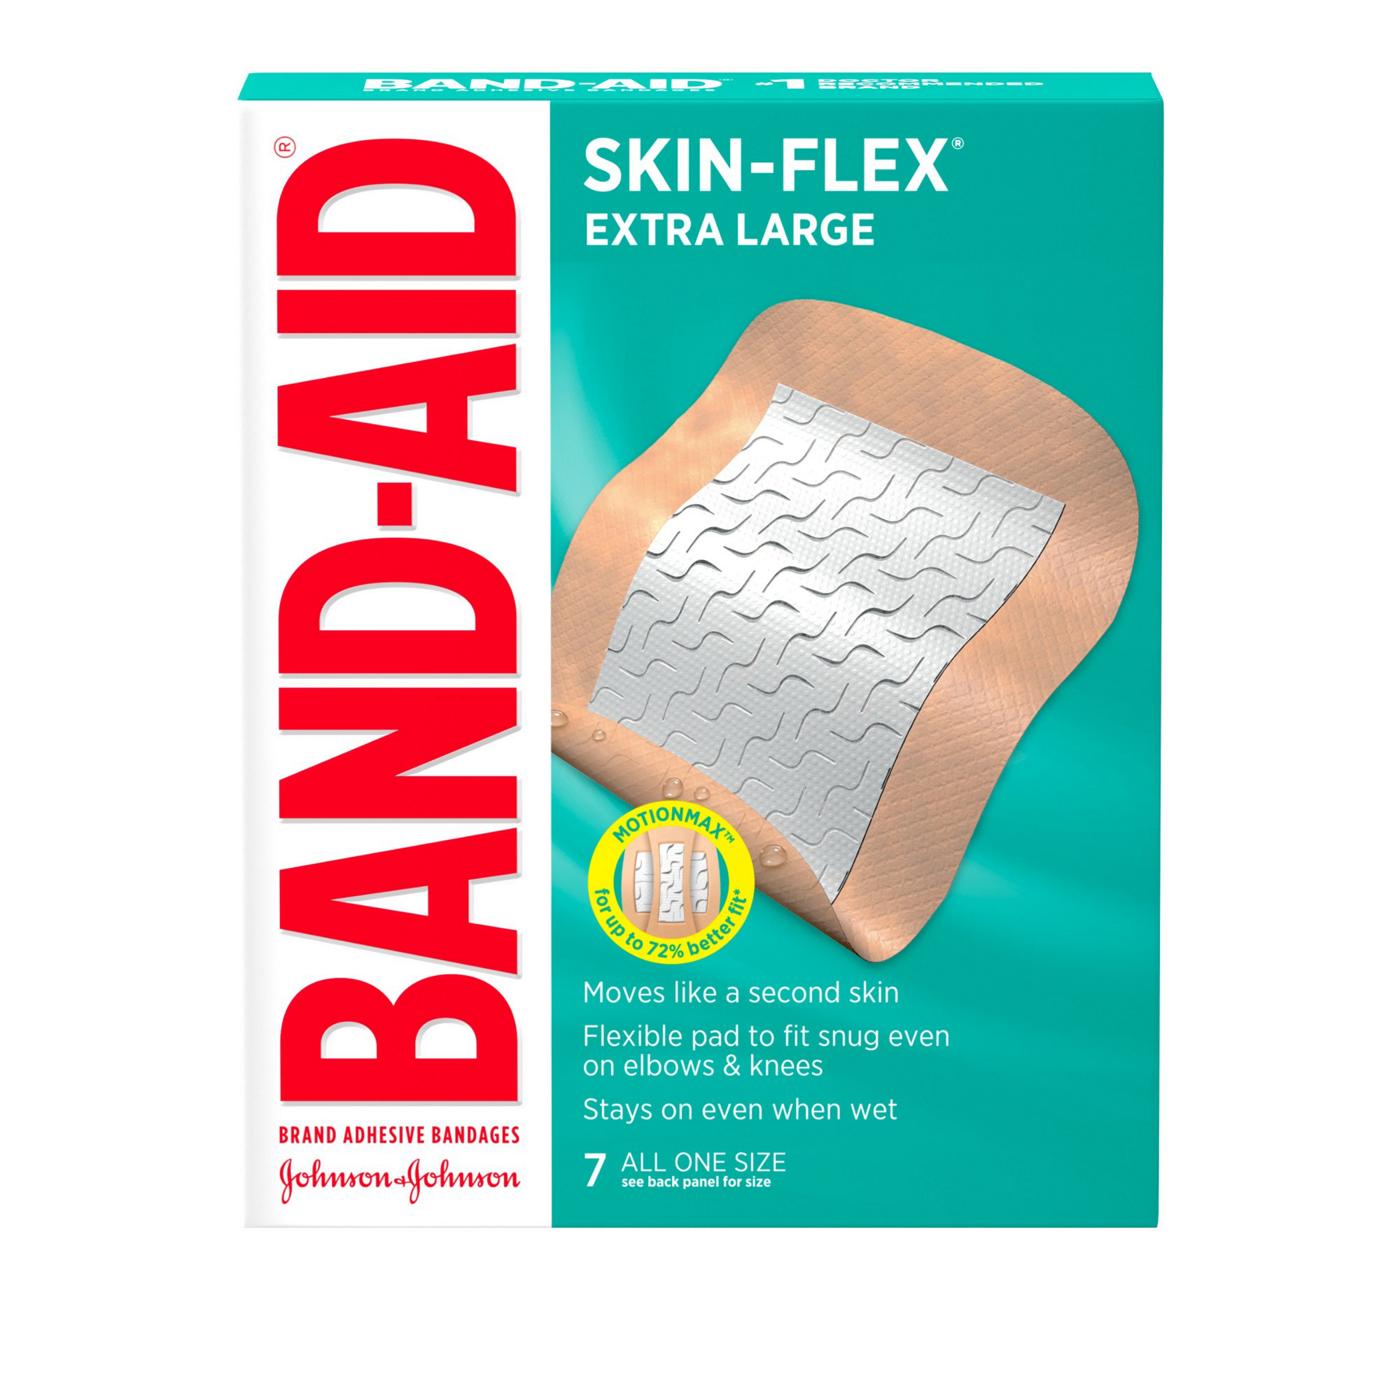 Band-Aid Brand Skin-Flex Adhesive Bandages - Extra Large; image 1 of 2